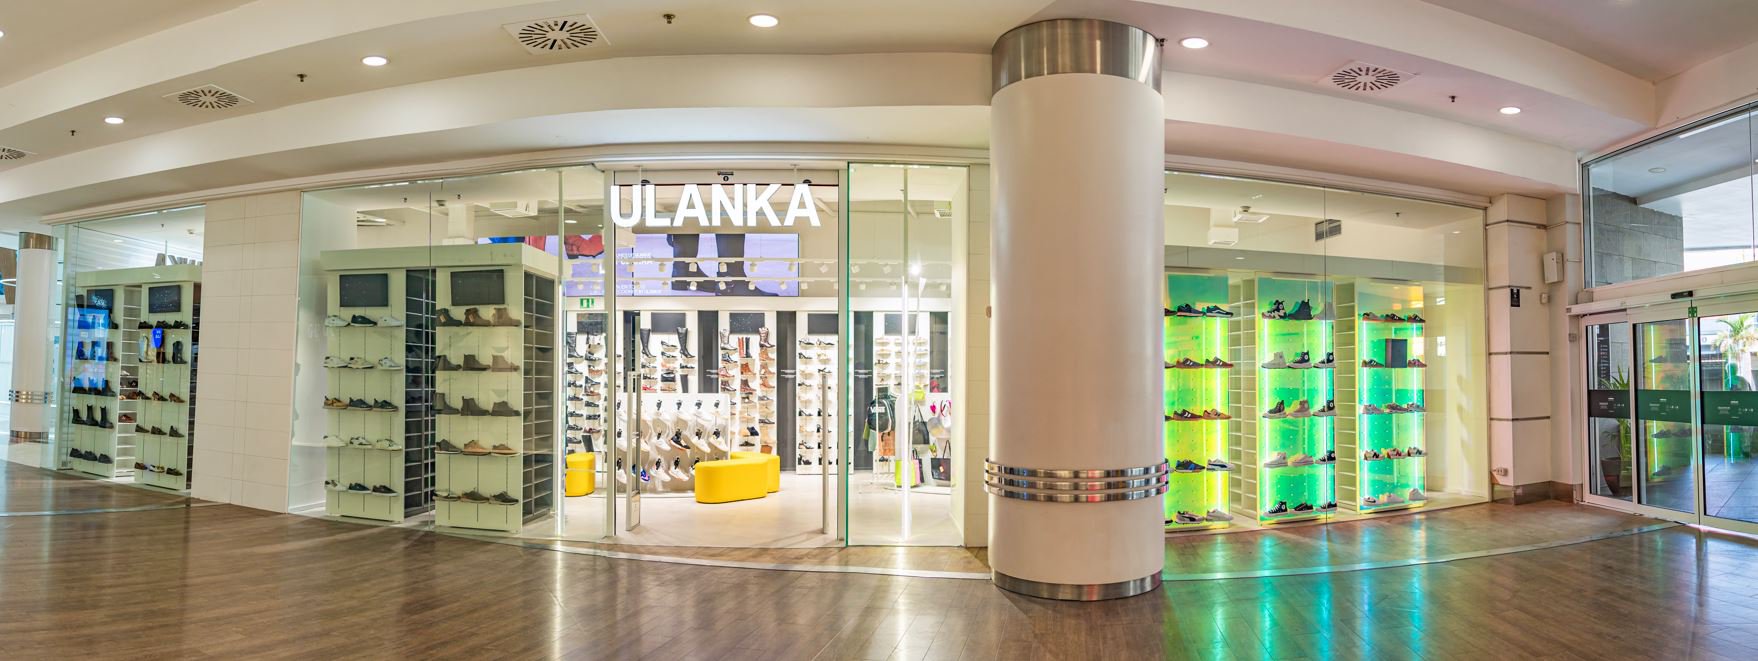 Ulanka abre sus puertas en el centro comercial Meridiano